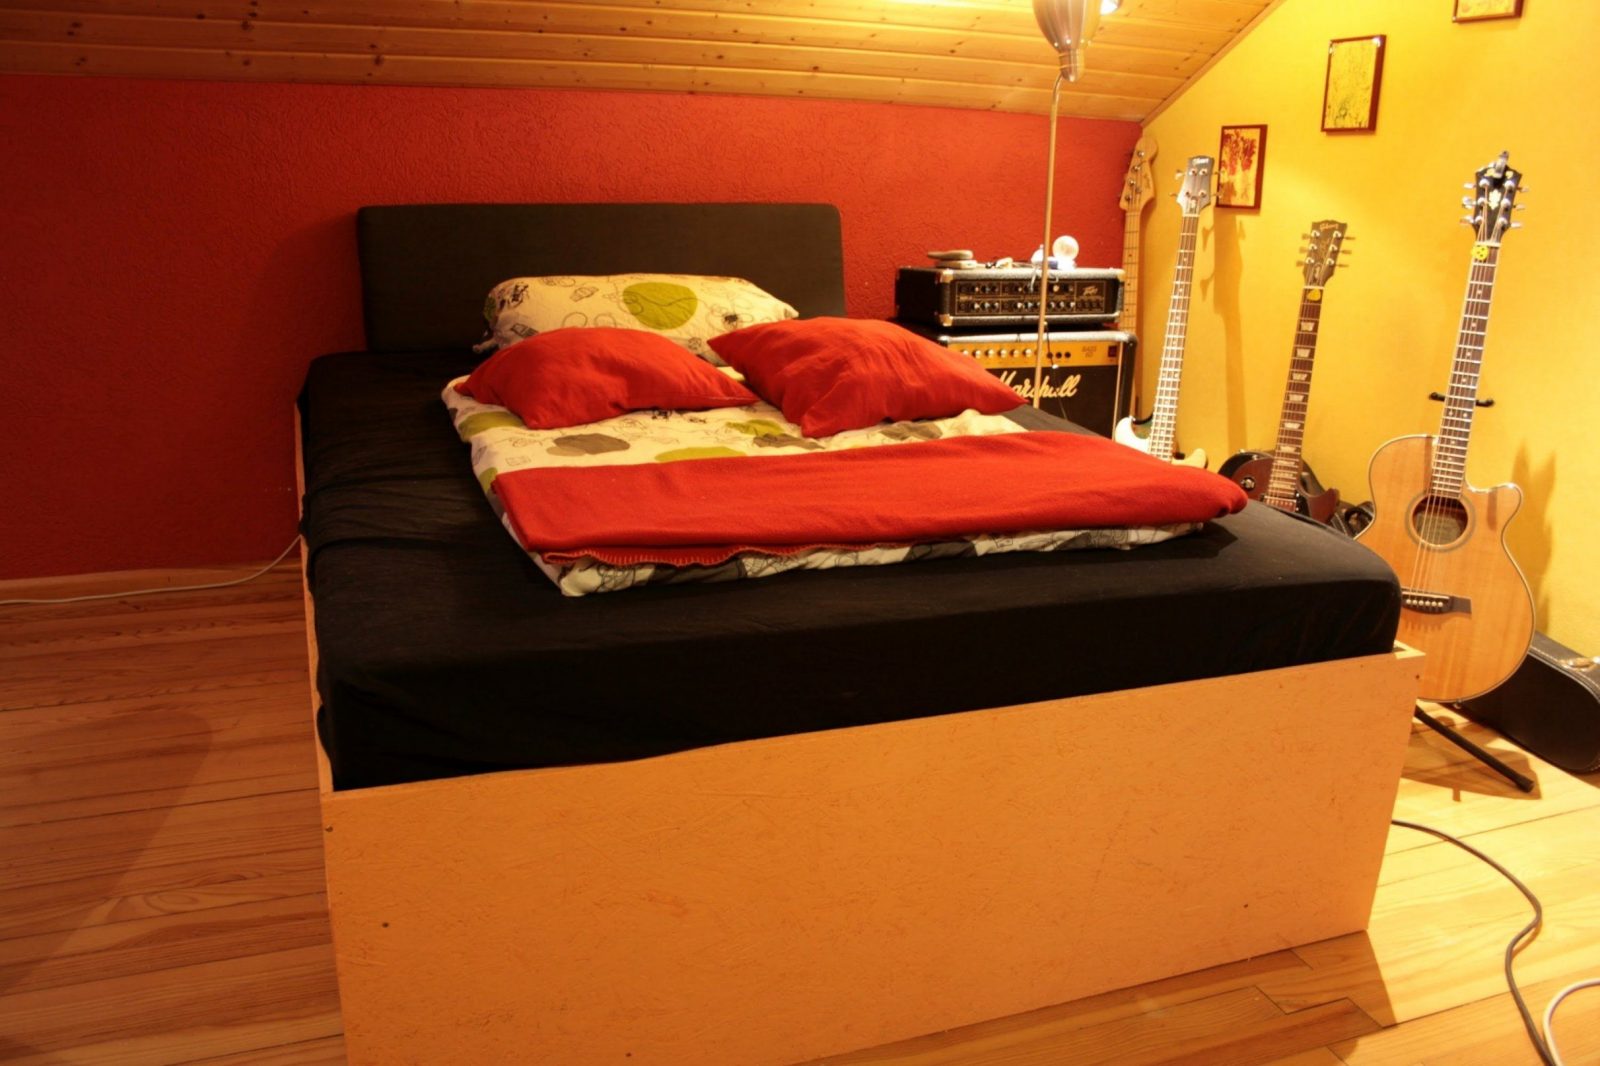 Interessant Außergewöhnliche Betten Selber Bauen Für Piraten Bett von Außergewöhnliche Betten Selber Bauen Bild